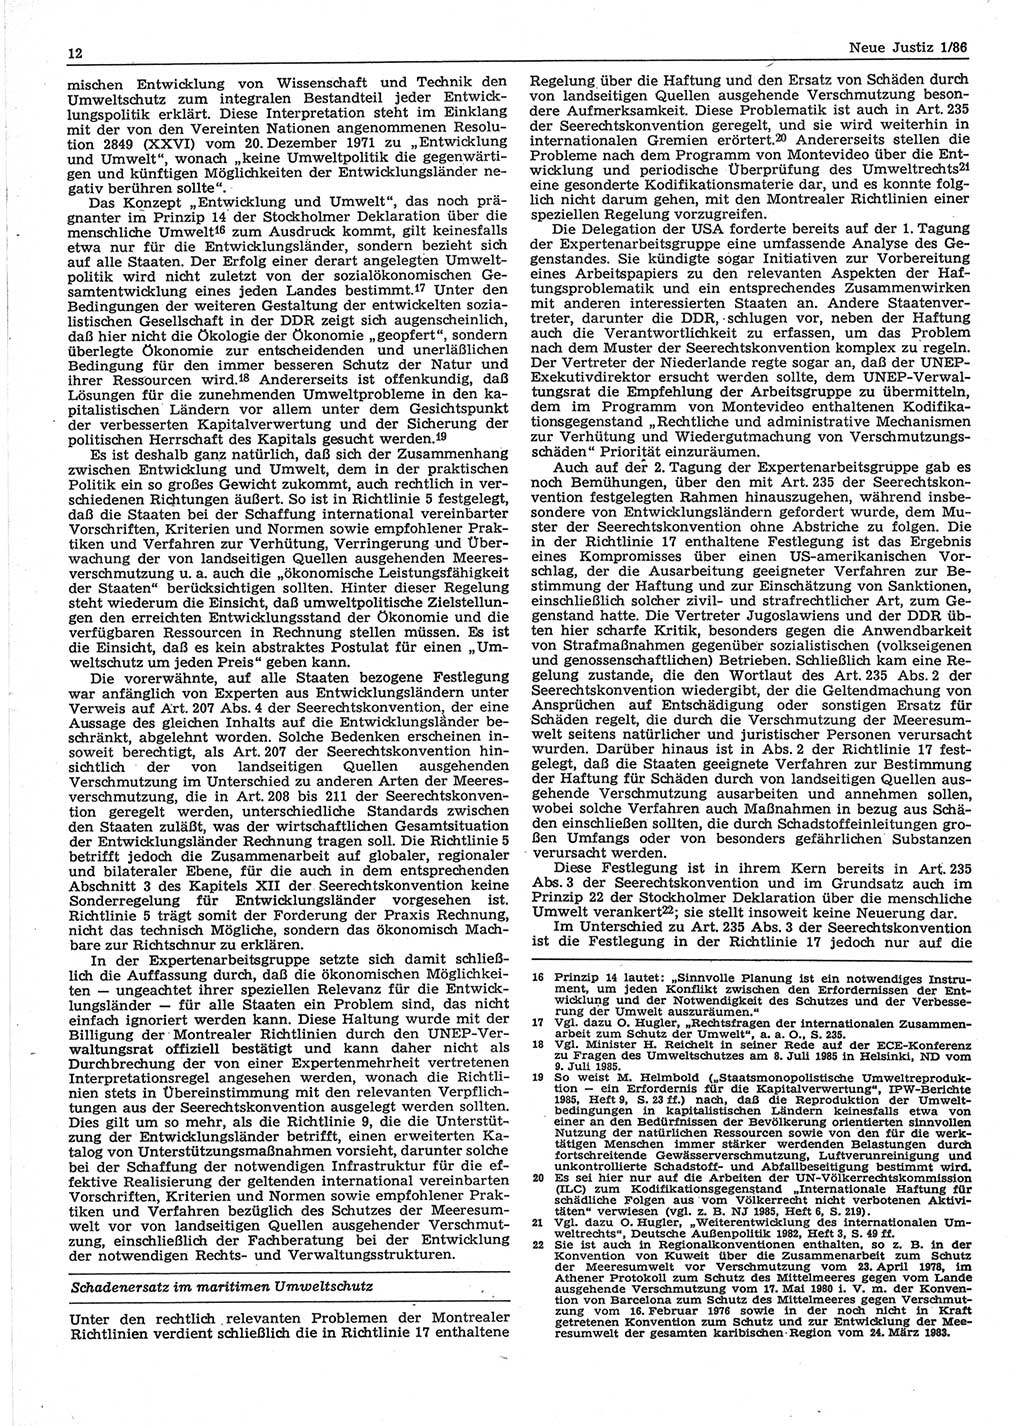 Neue Justiz (NJ), Zeitschrift für sozialistisches Recht und Gesetzlichkeit [Deutsche Demokratische Republik (DDR)], 40. Jahrgang 1986, Seite 12 (NJ DDR 1986, S. 12)